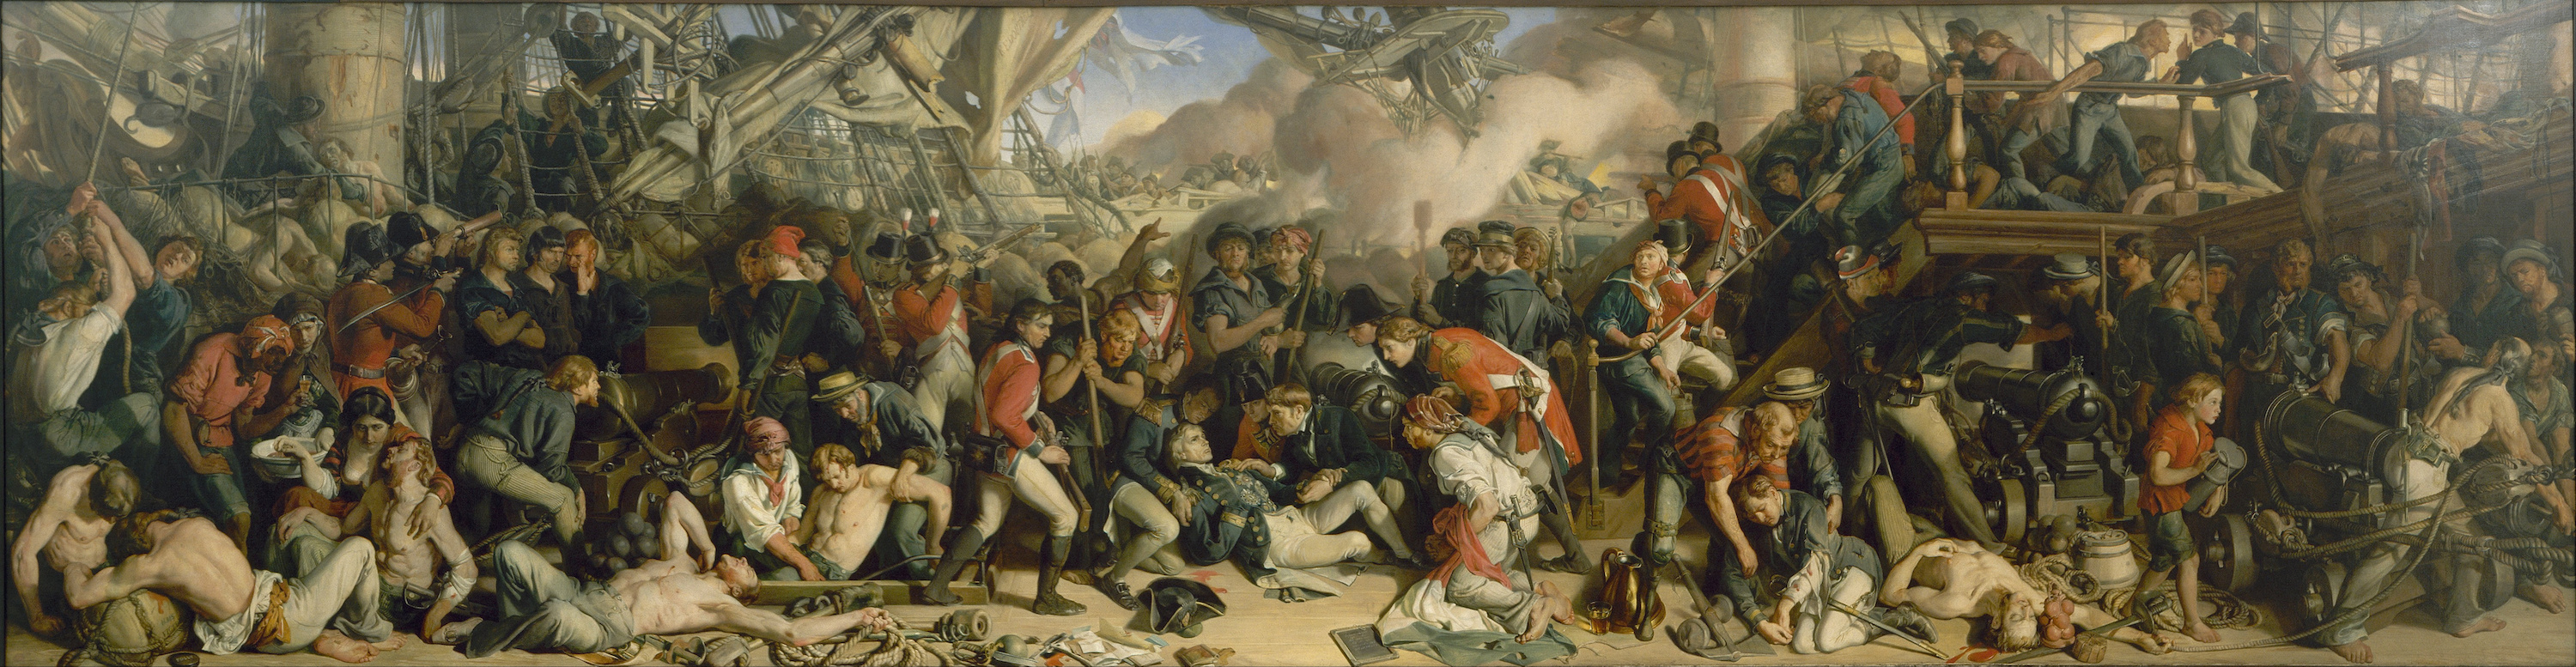 Moartea lui Nelson by Daniel Maclise - 1859–1861 - 98.5 x 353 cm 